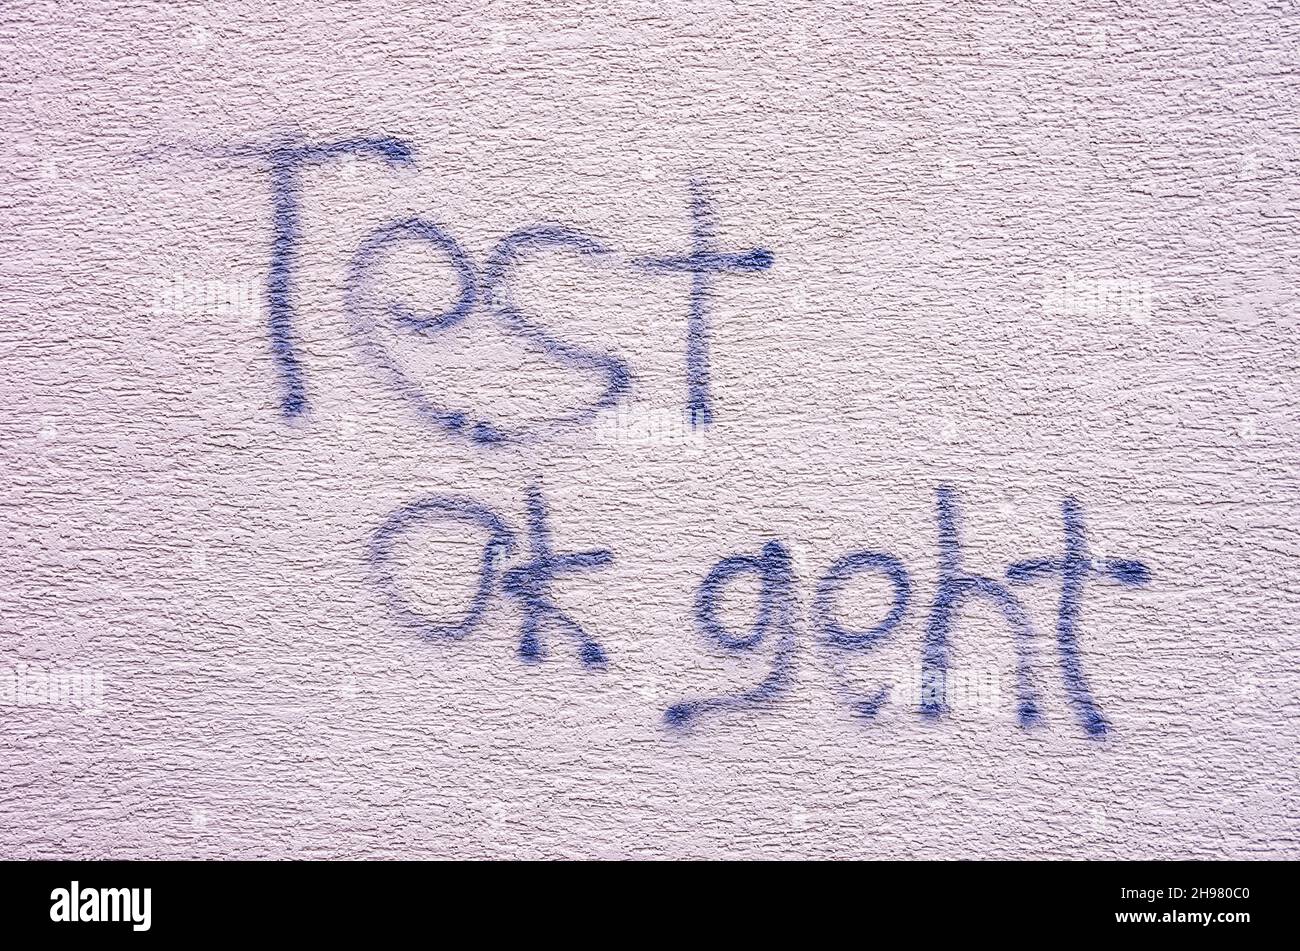 Graffiti avec le texte allemand 'Test ok geht' sur un mur avec plâtre blanc. Banque D'Images